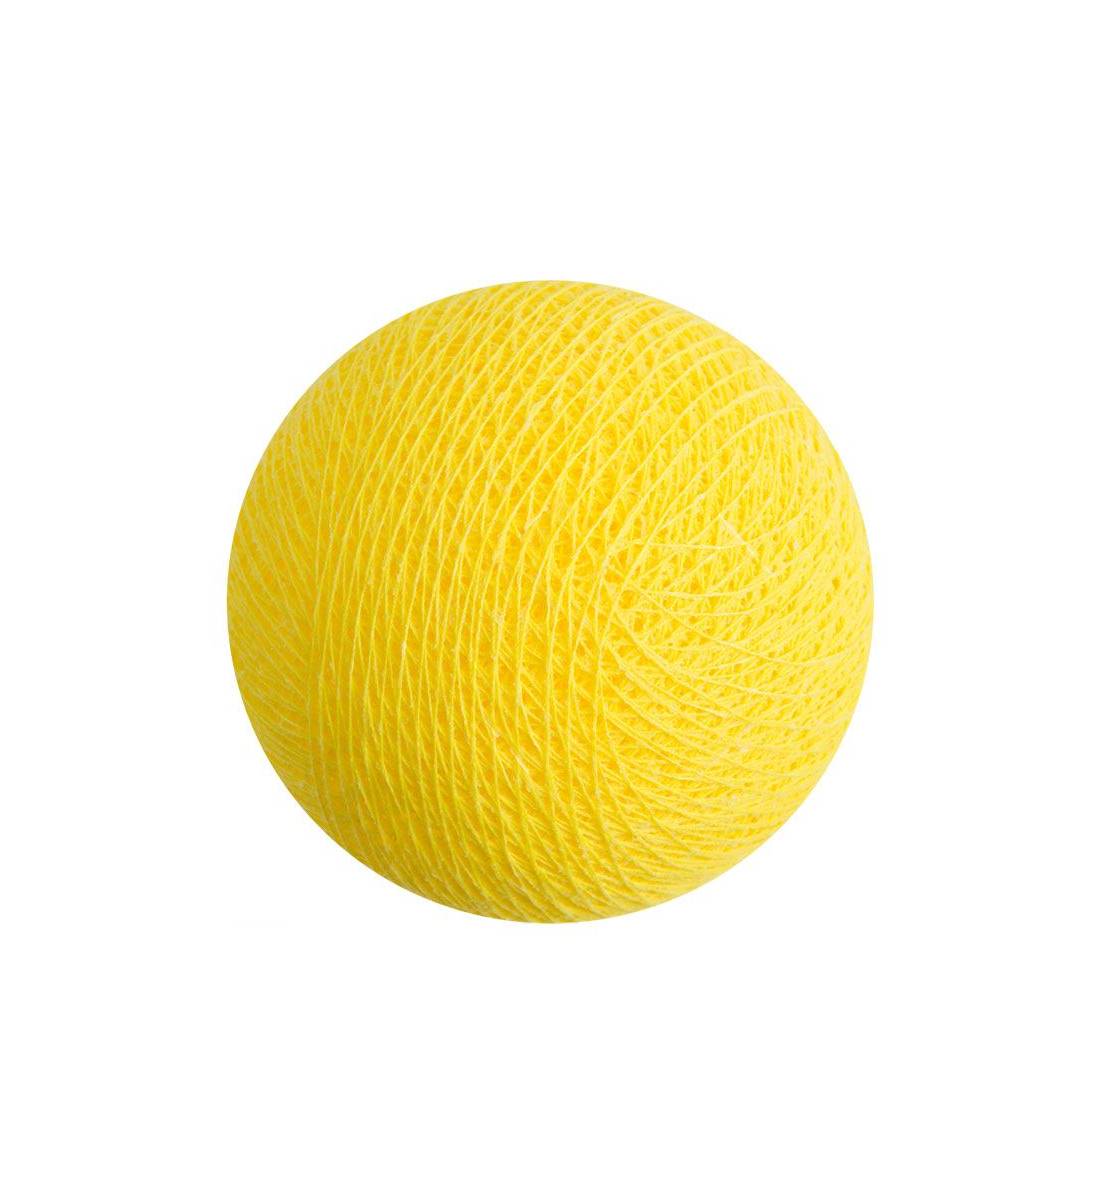 lemon - Baby night light balls - La Case de Cousin Paul